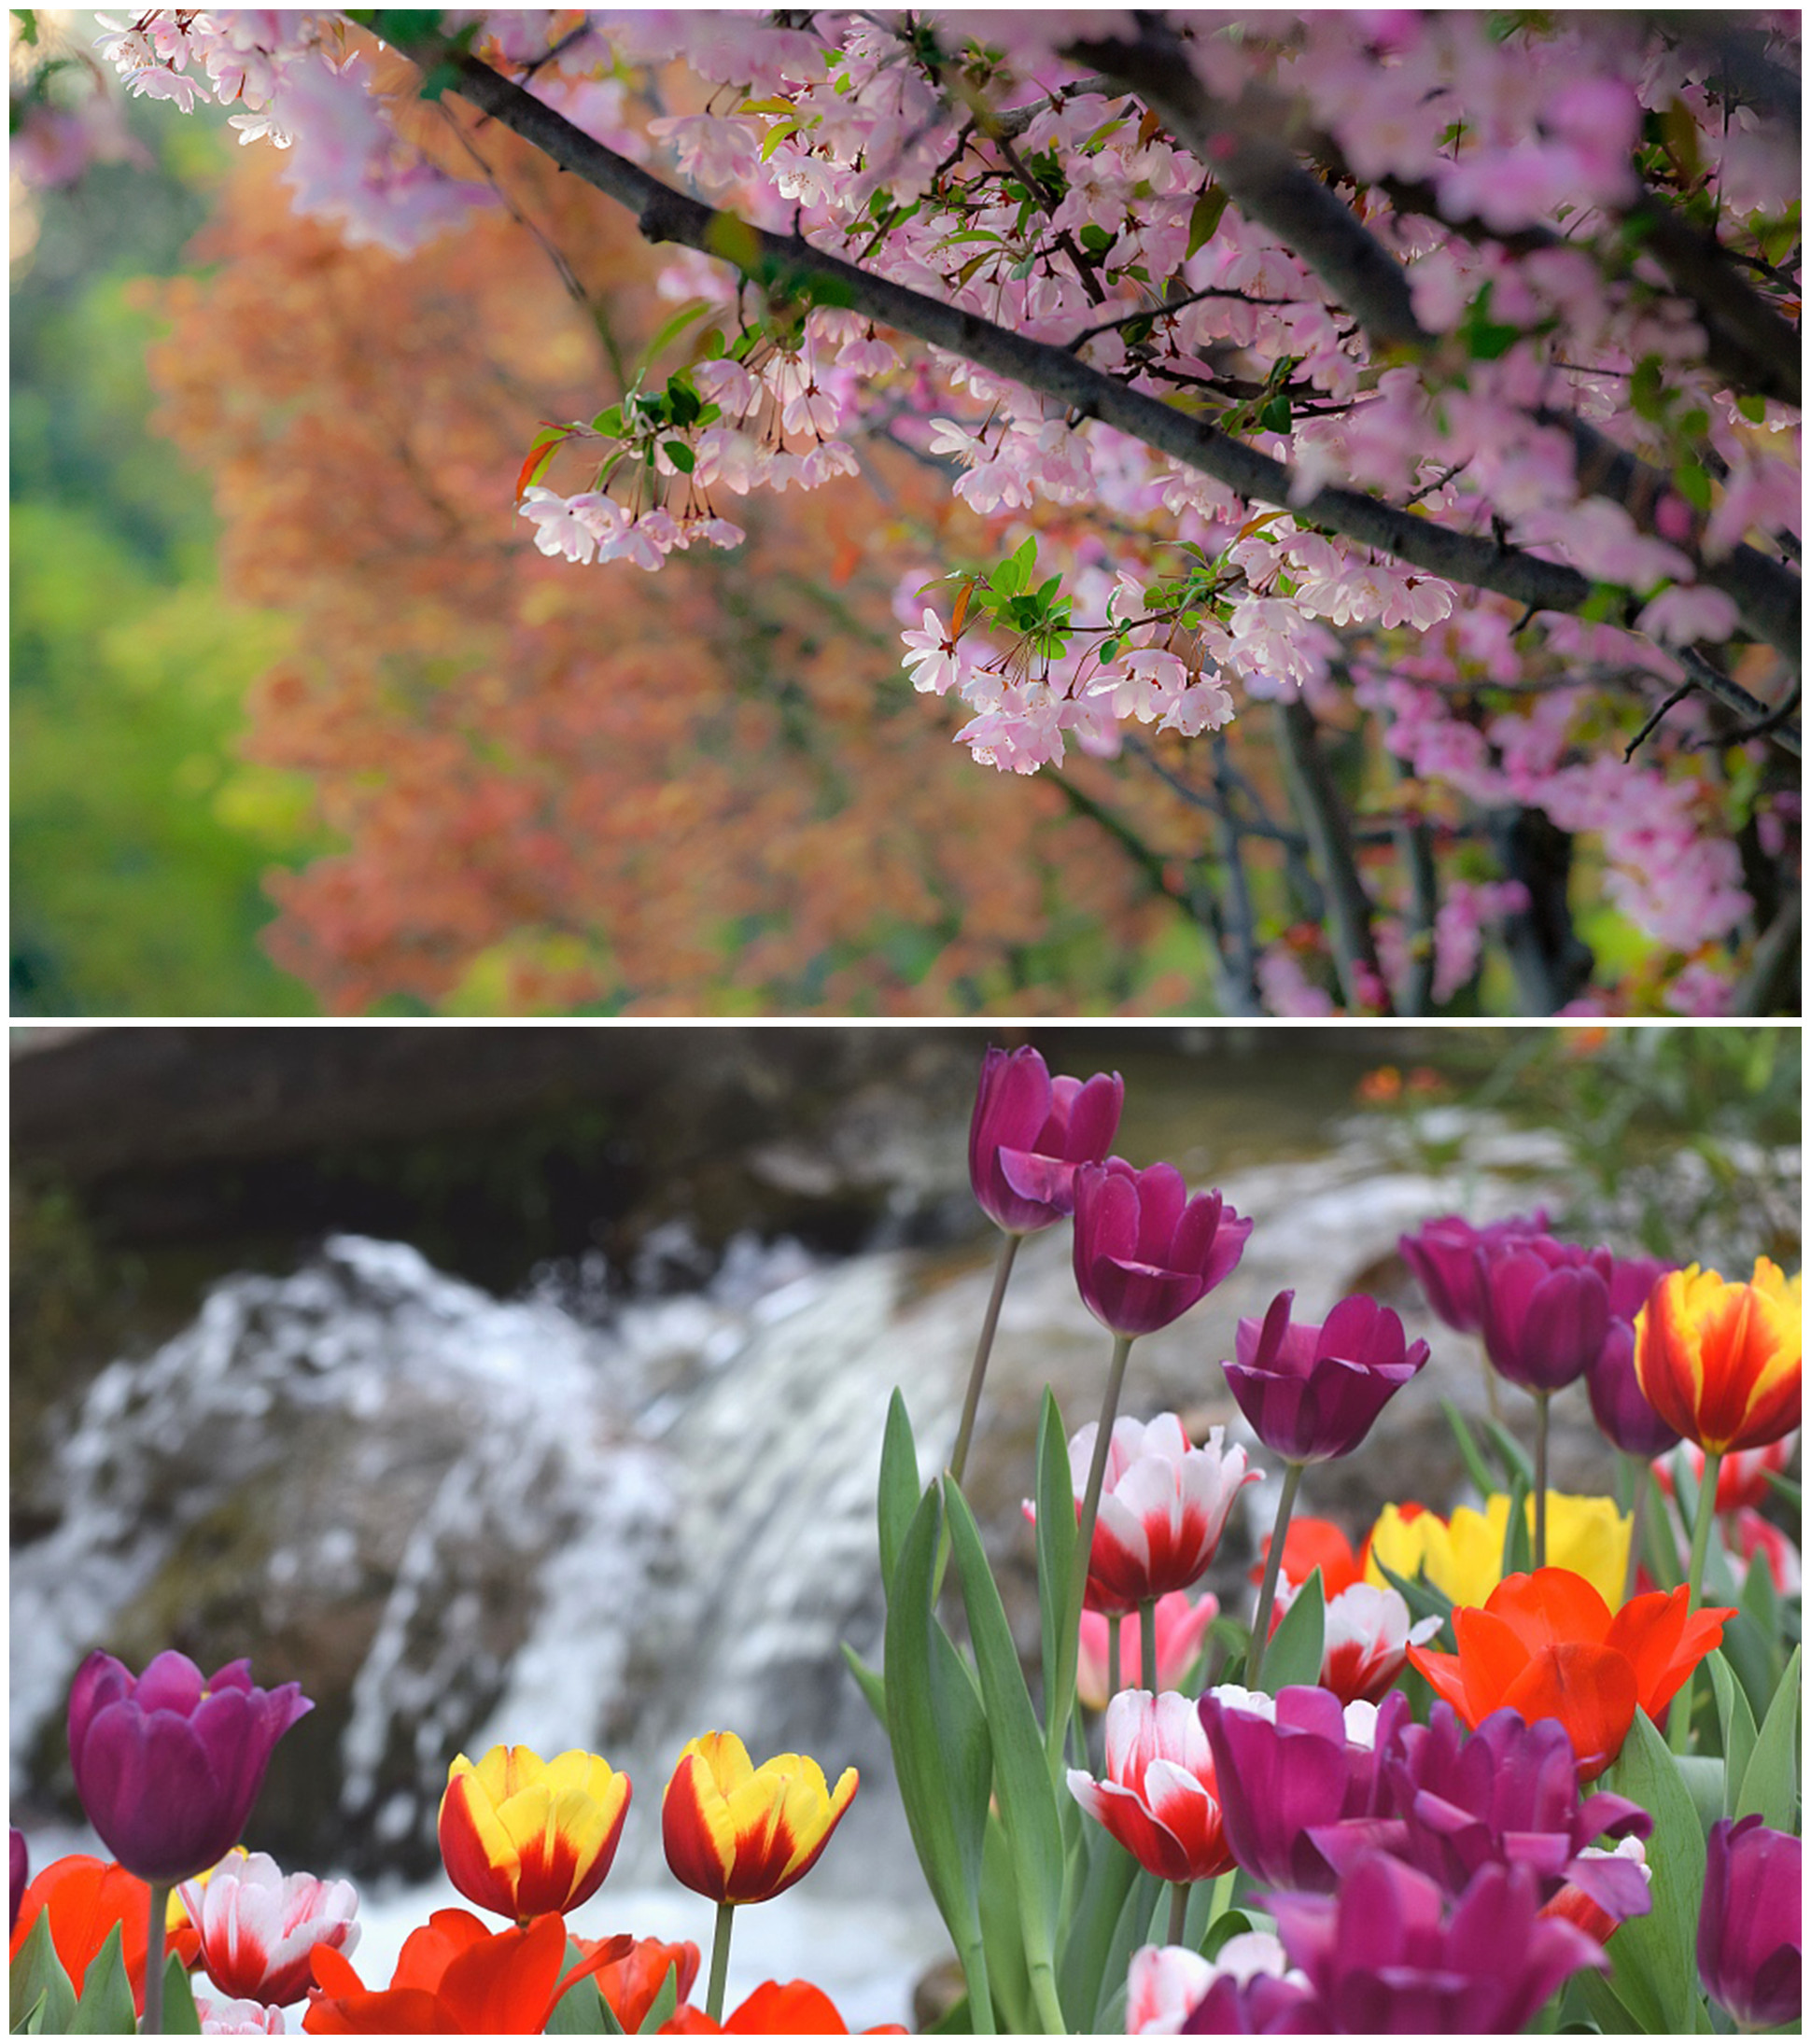 《春暖花开的中国》开播 绘就美丽中国春景图(图3)